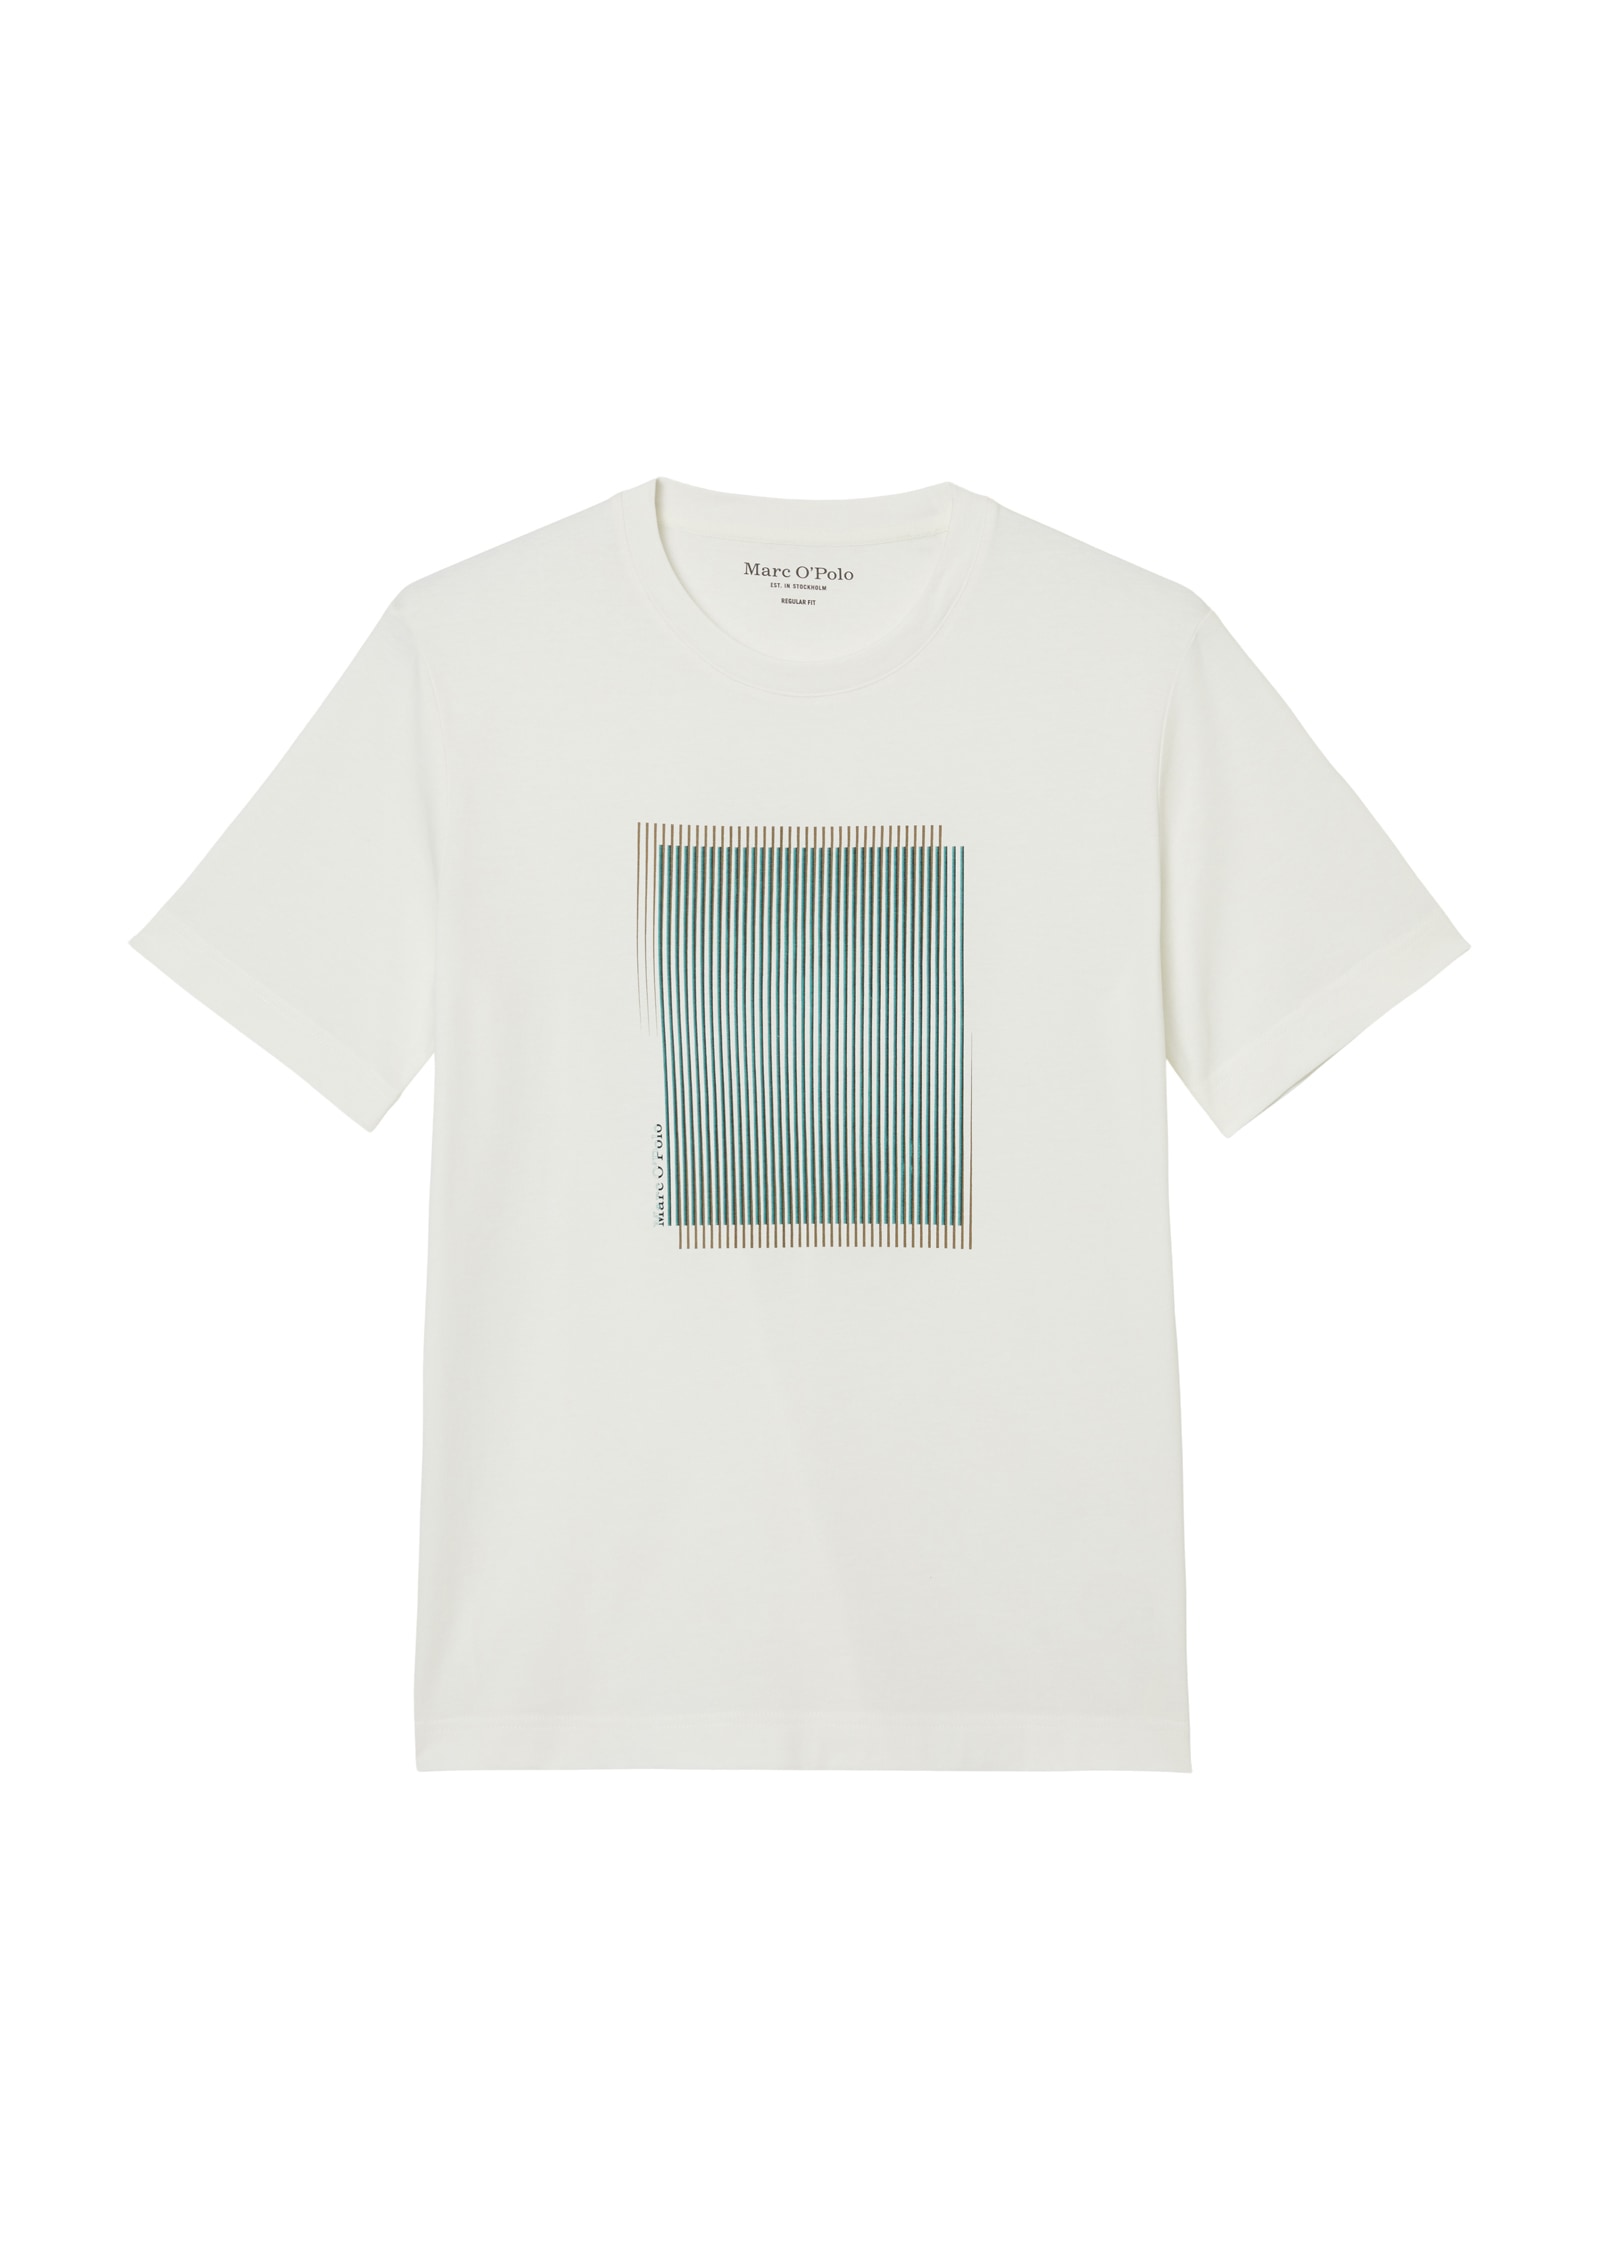 T-Shirt, geometrischer Print mit Streifenmuster